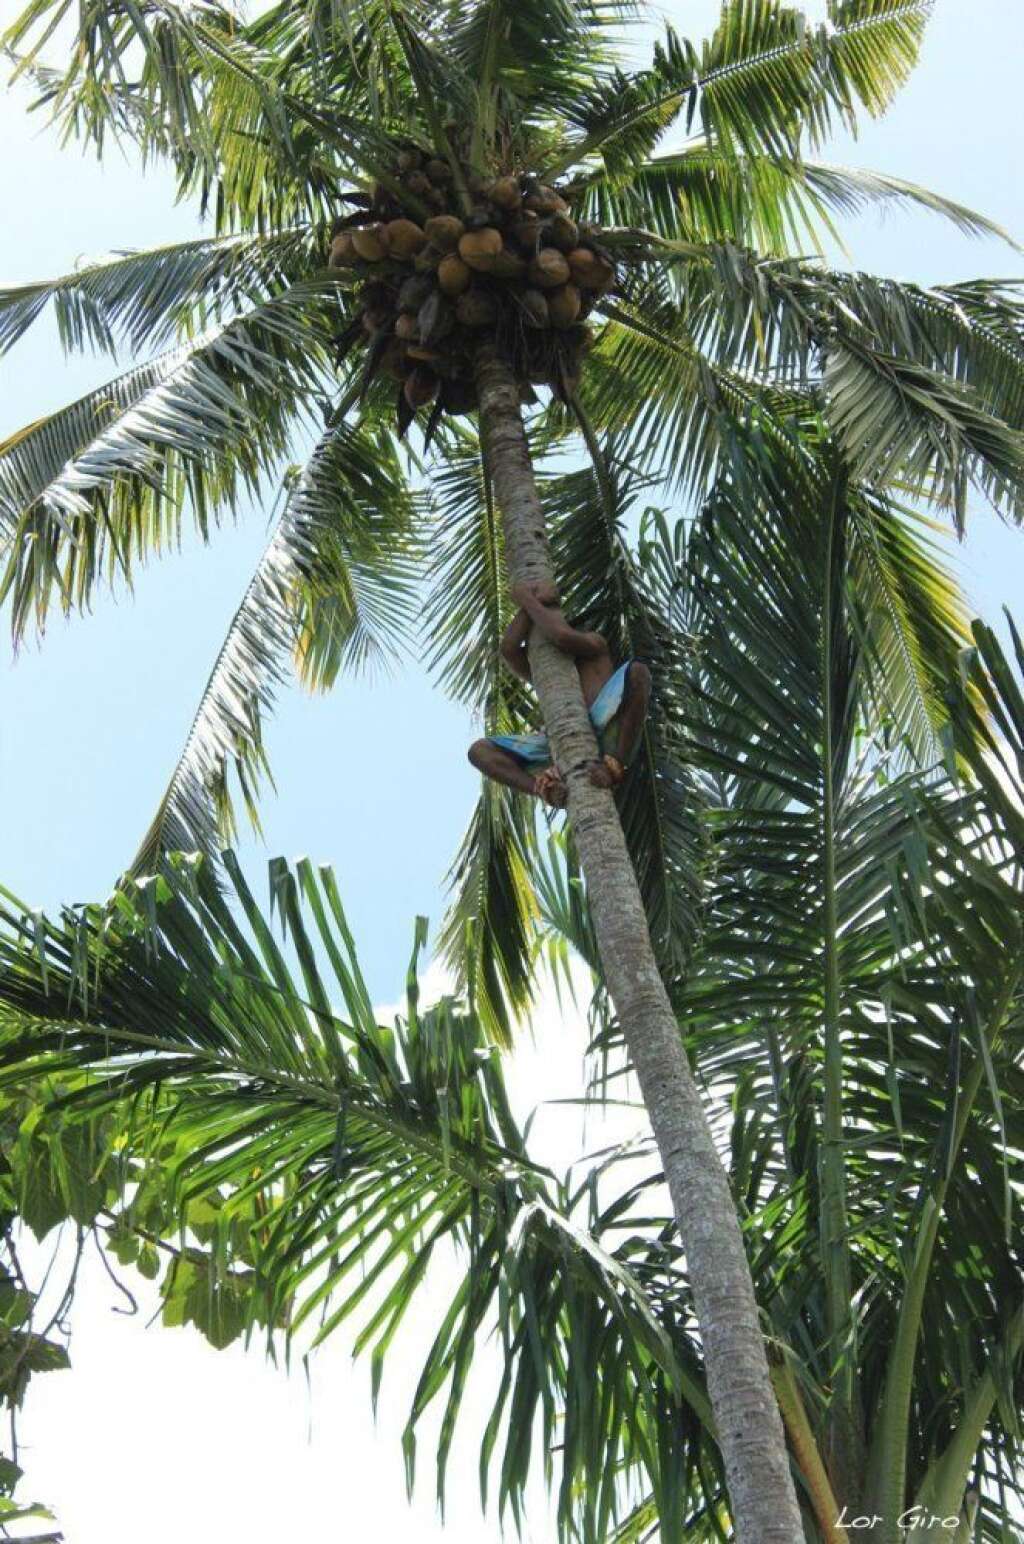 - on grimpe aux palmiers chercher des noix de coco fraîches à boire